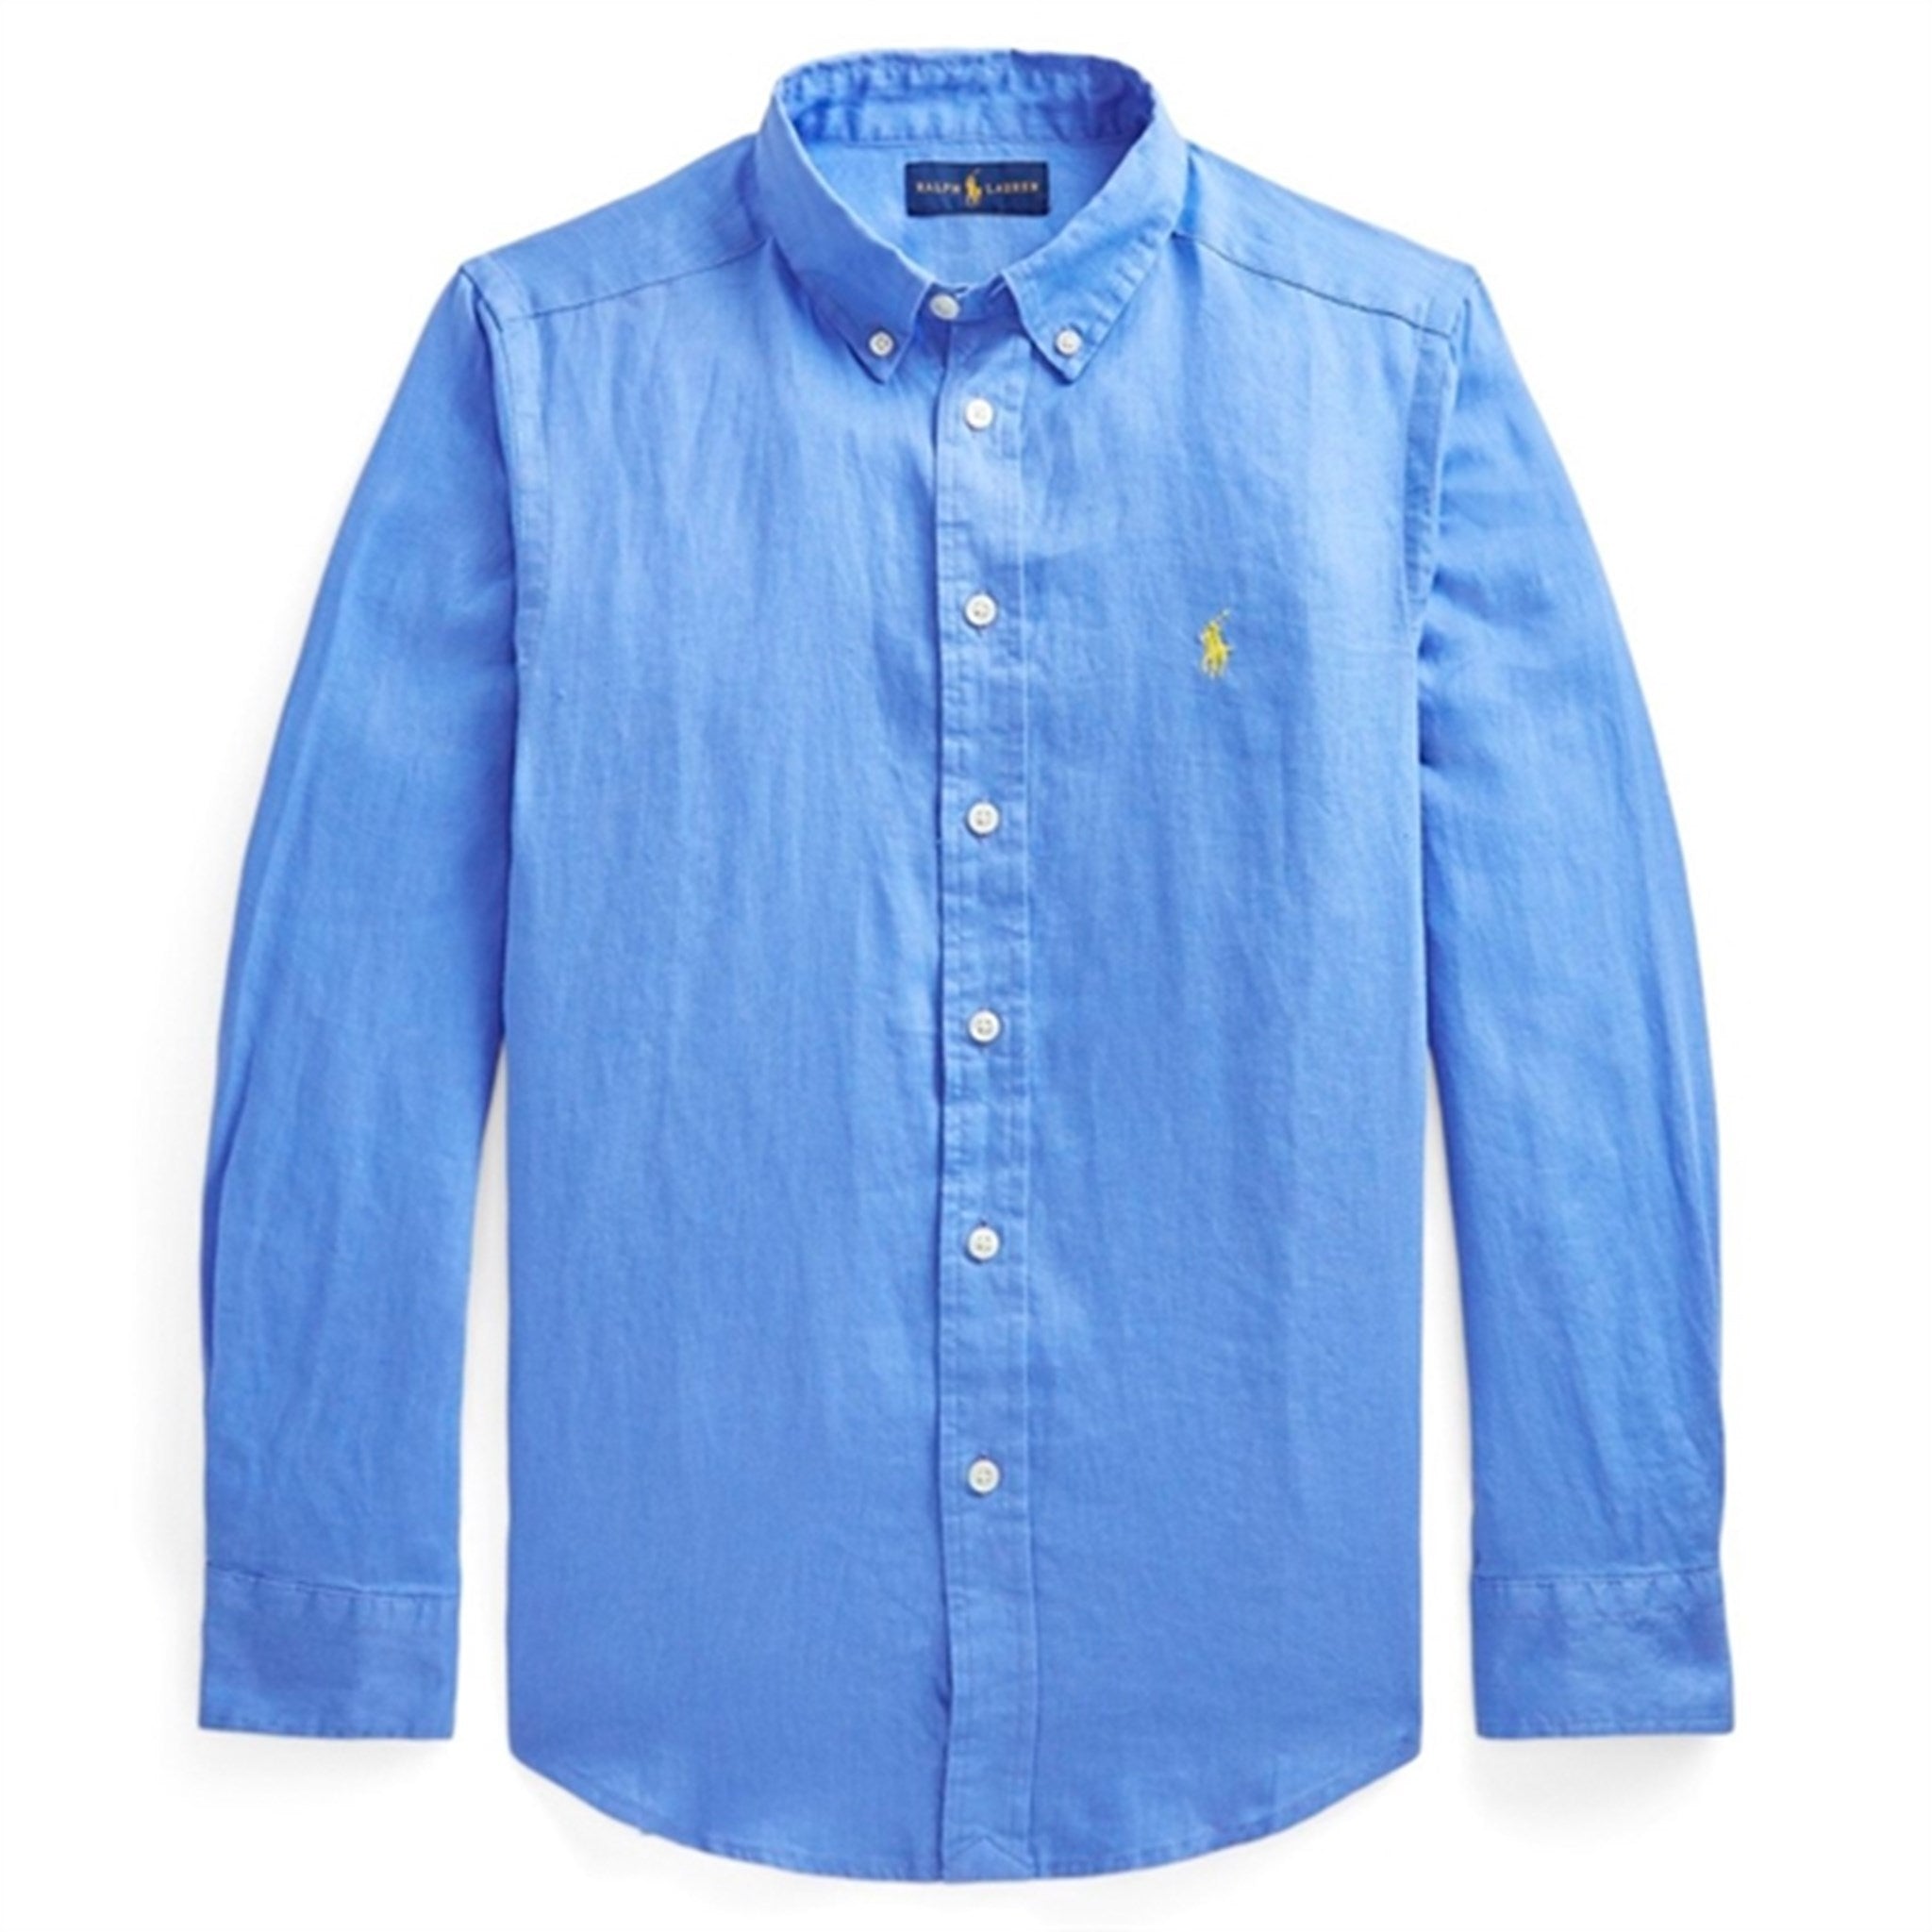 Polo Ralph Lauren Shirt Harbour Island Blue